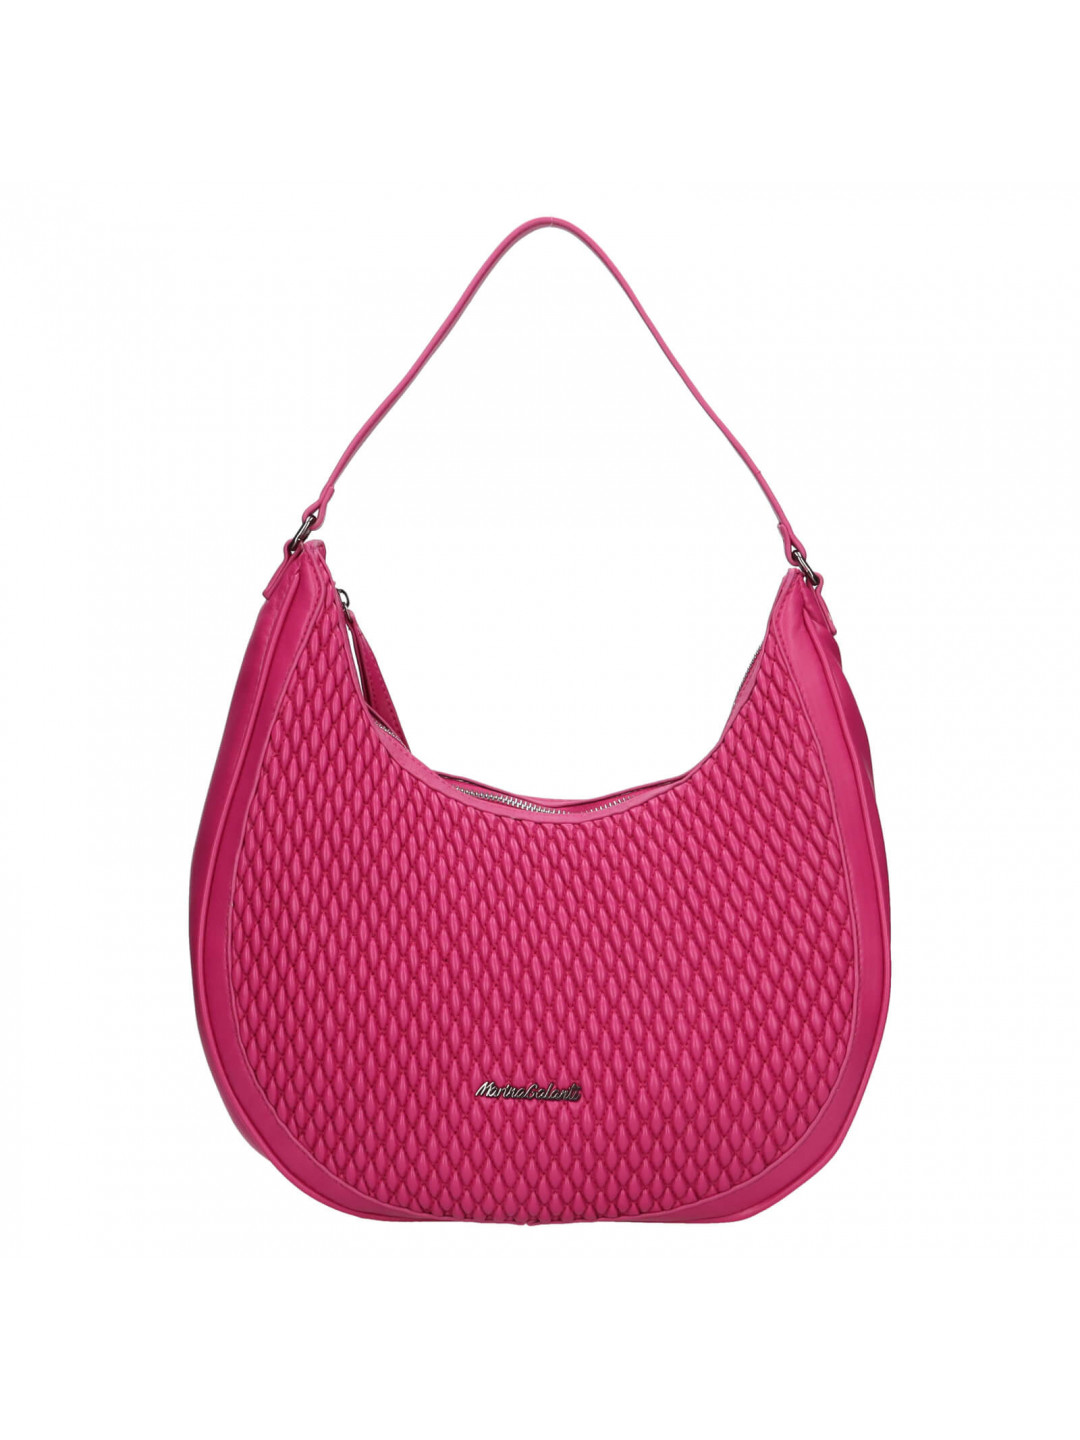 Dámská kabelka přes rameno Marina Galanti Tavita – fialovo-růžová